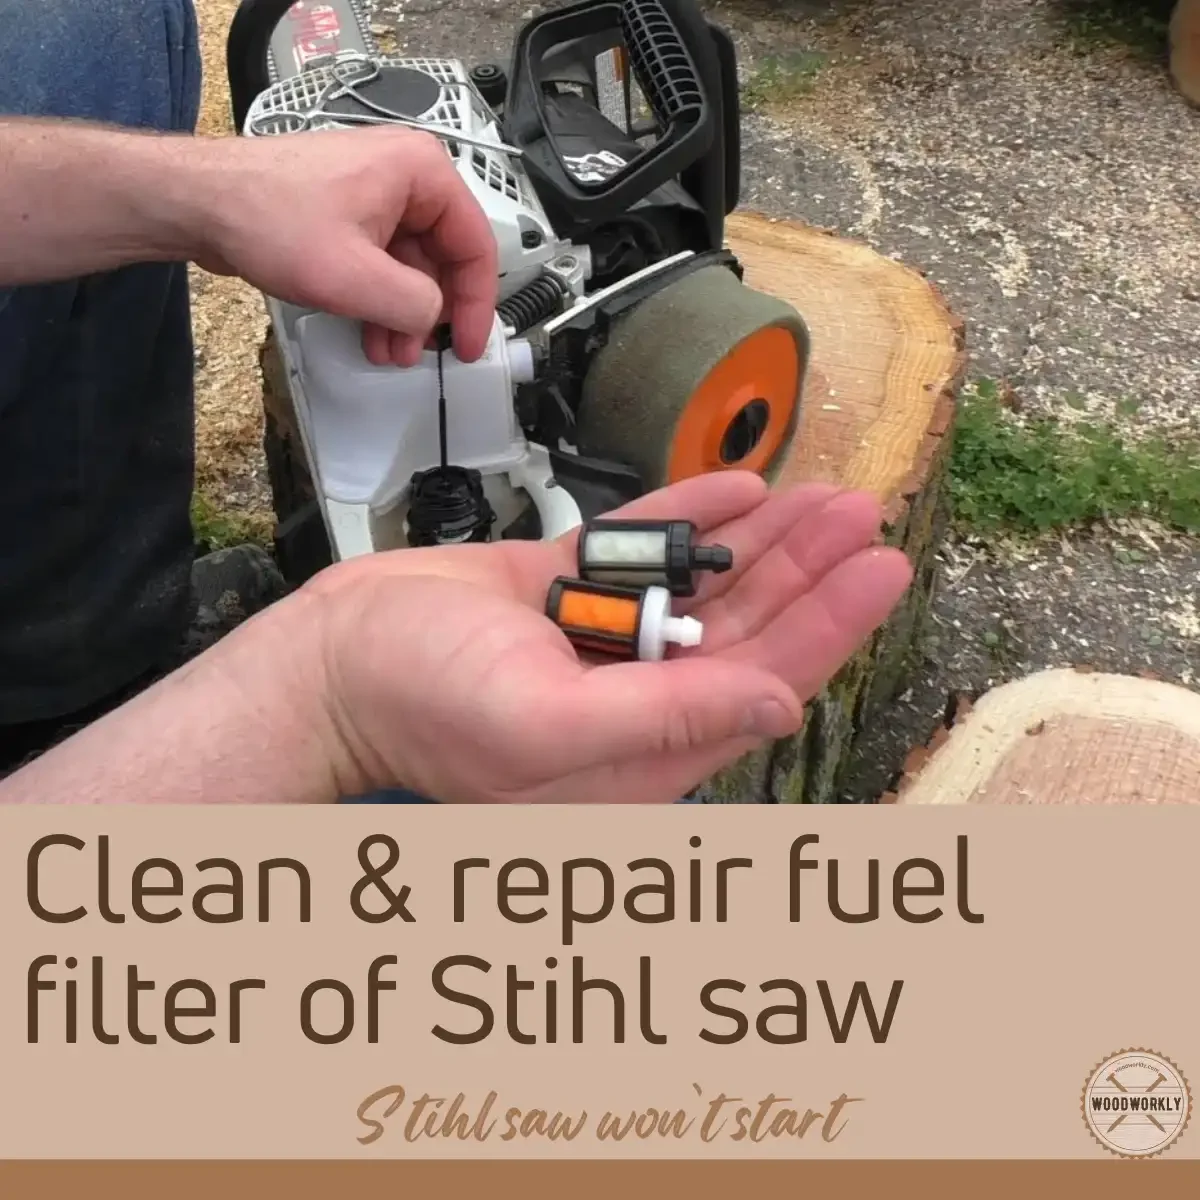 Clean & repair fuel filter of Stihl saw